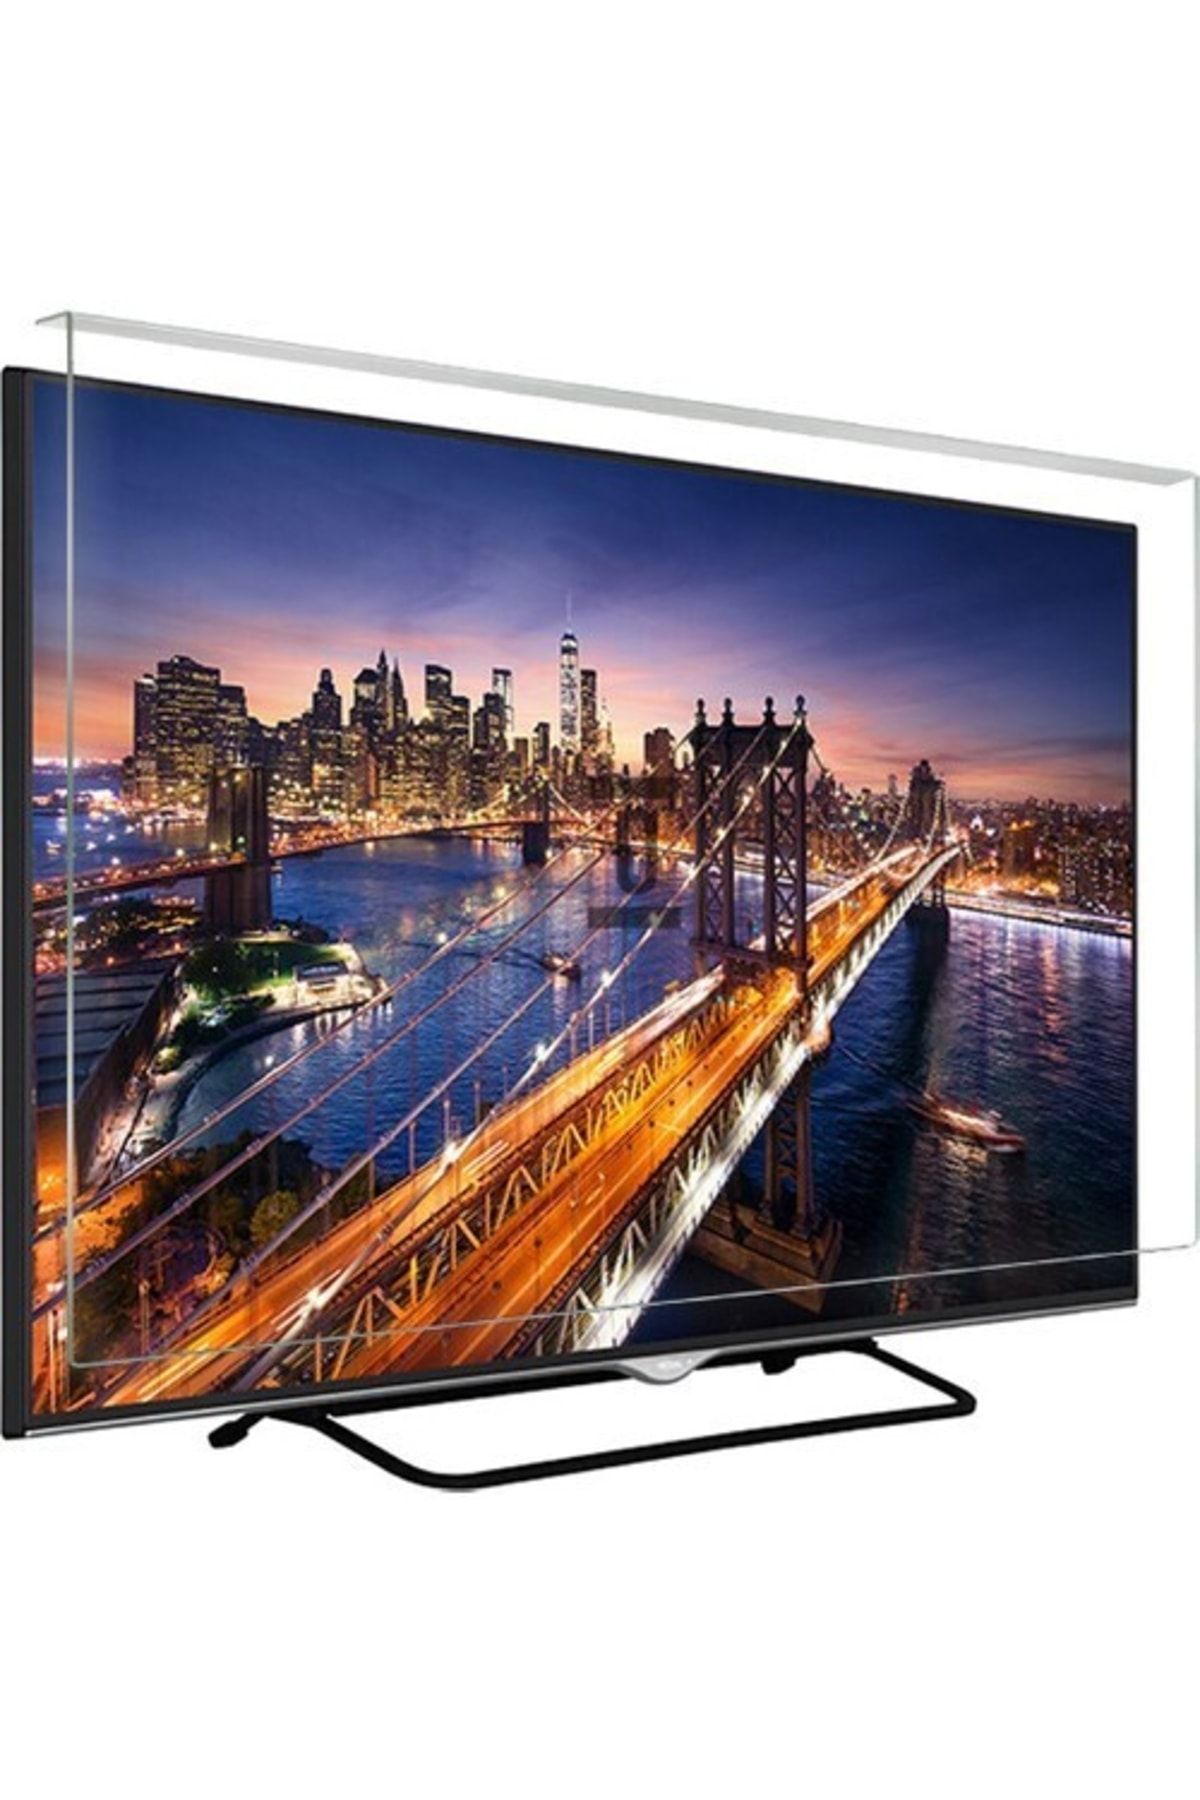 Finlux Asaf Online-evçelik 50fu520 Tv Ekran Koruyucu Düz (flat) Ekran